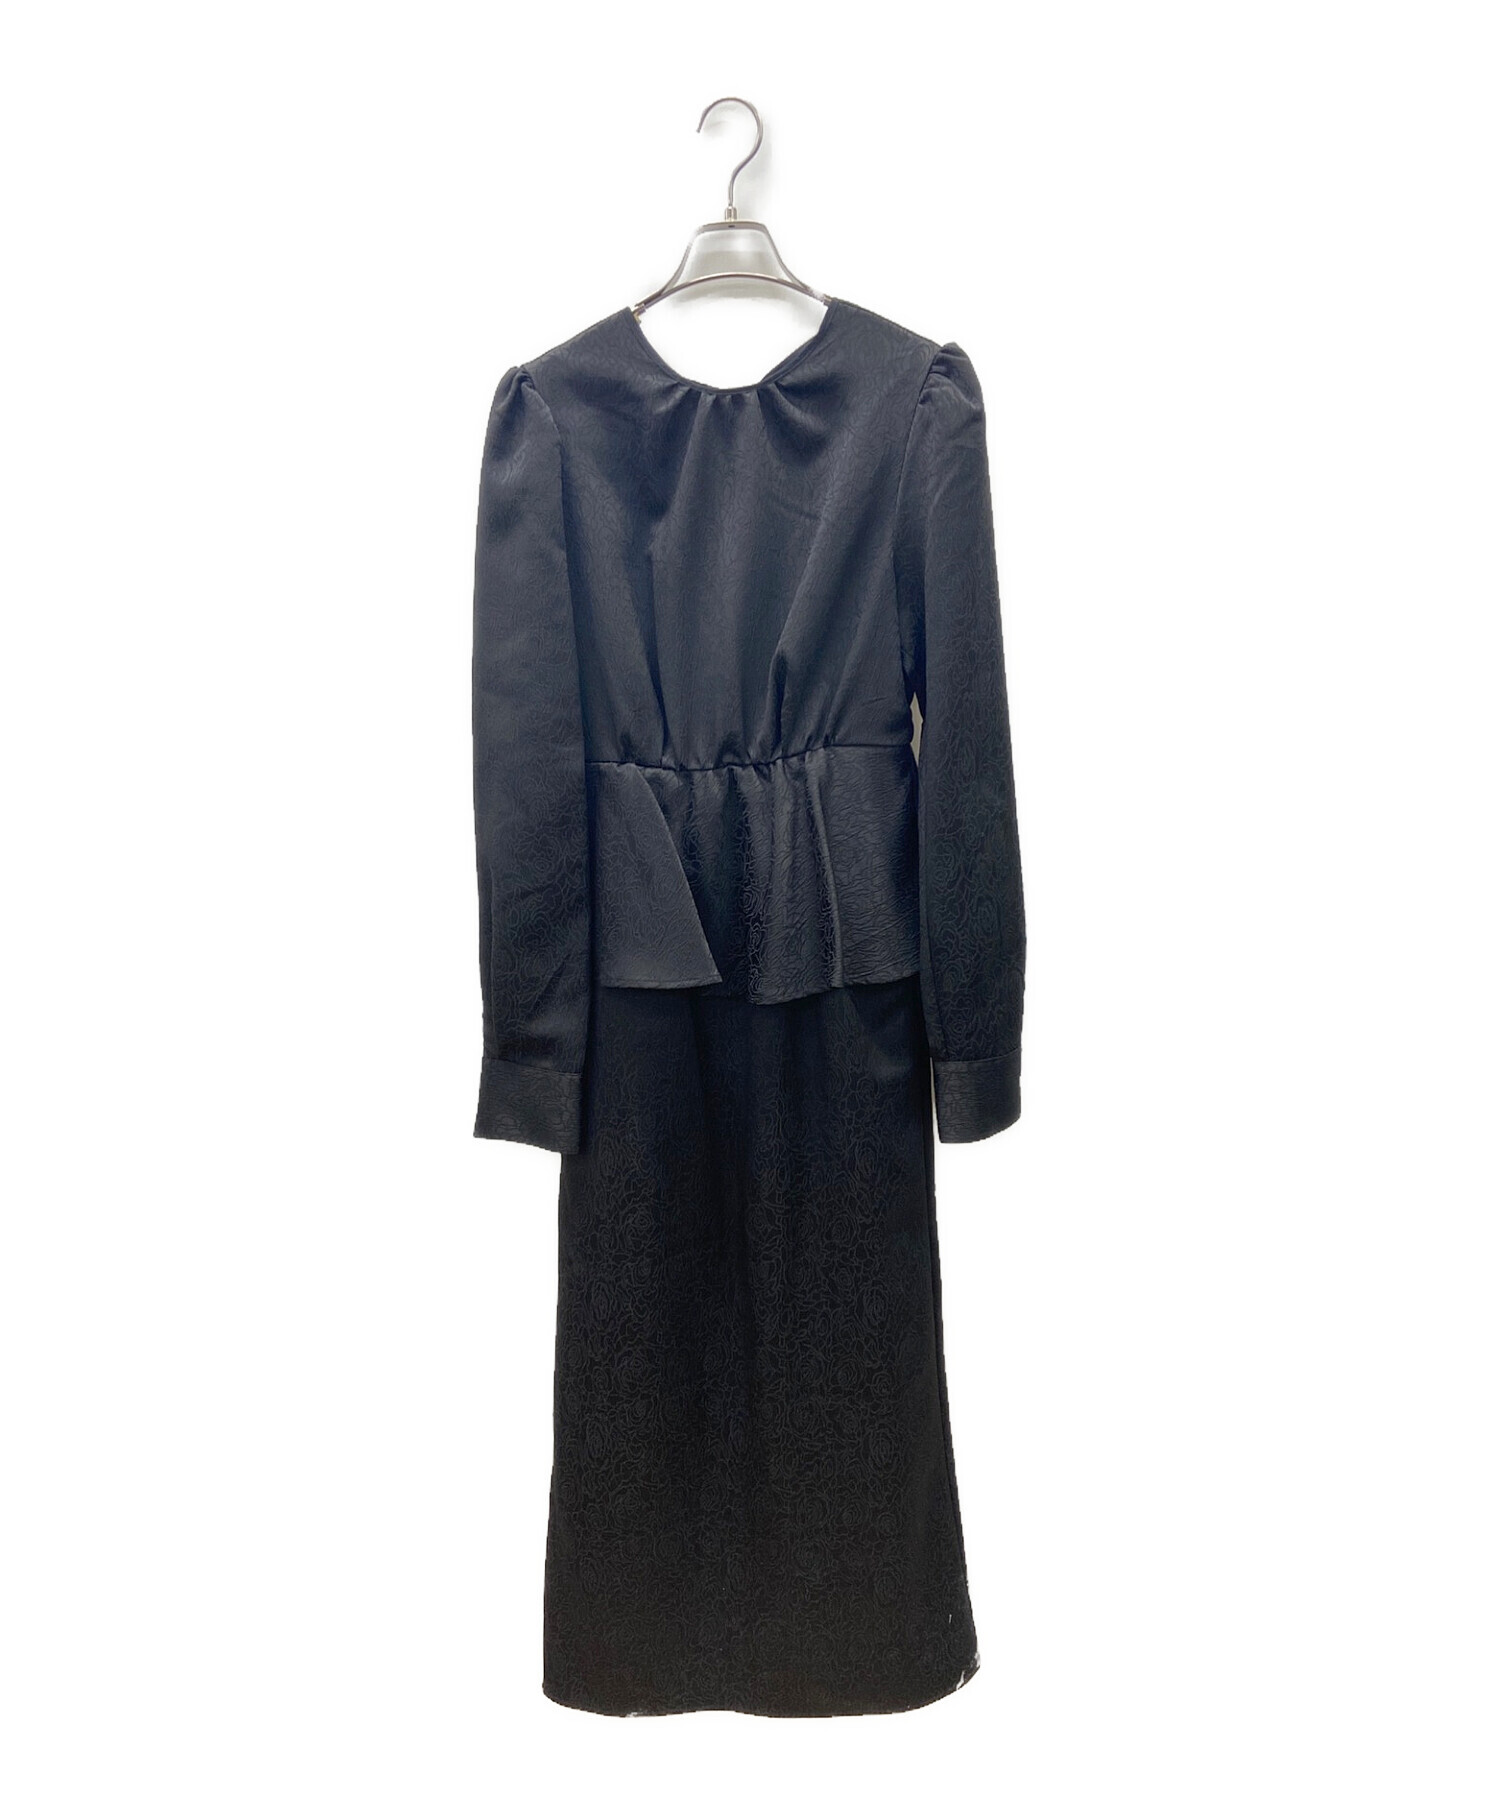 AMERI (アメリ) LADY LIKE PEPLUM DRESS ブラック サイズ:M